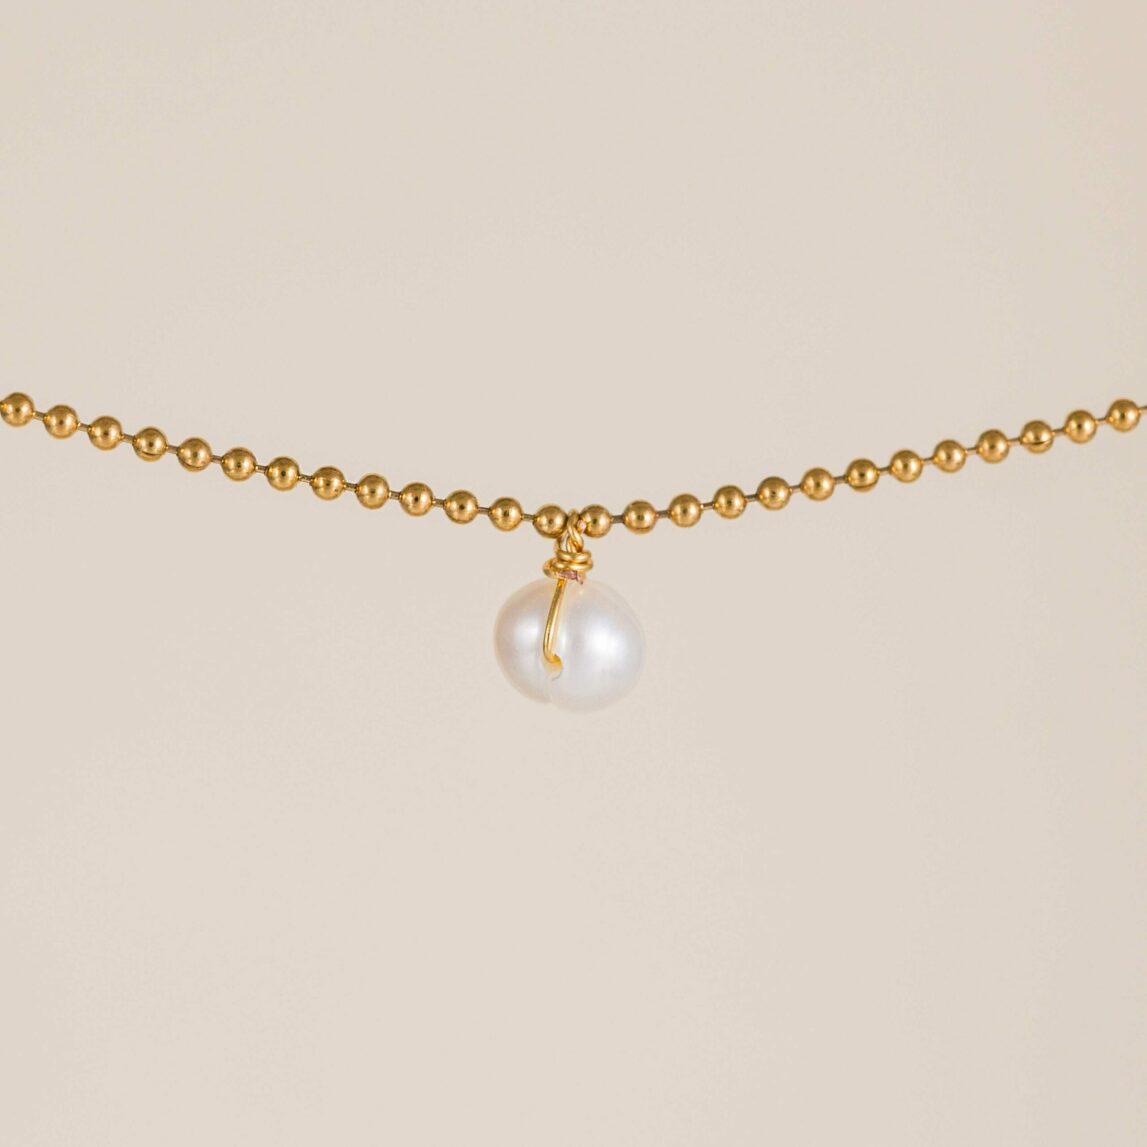 La Gargantilla Perla Dulcinea es una cadena semi rígida con una perla natural colgante en el centro de la misma, una joya de mujer perfecta para regalarte.